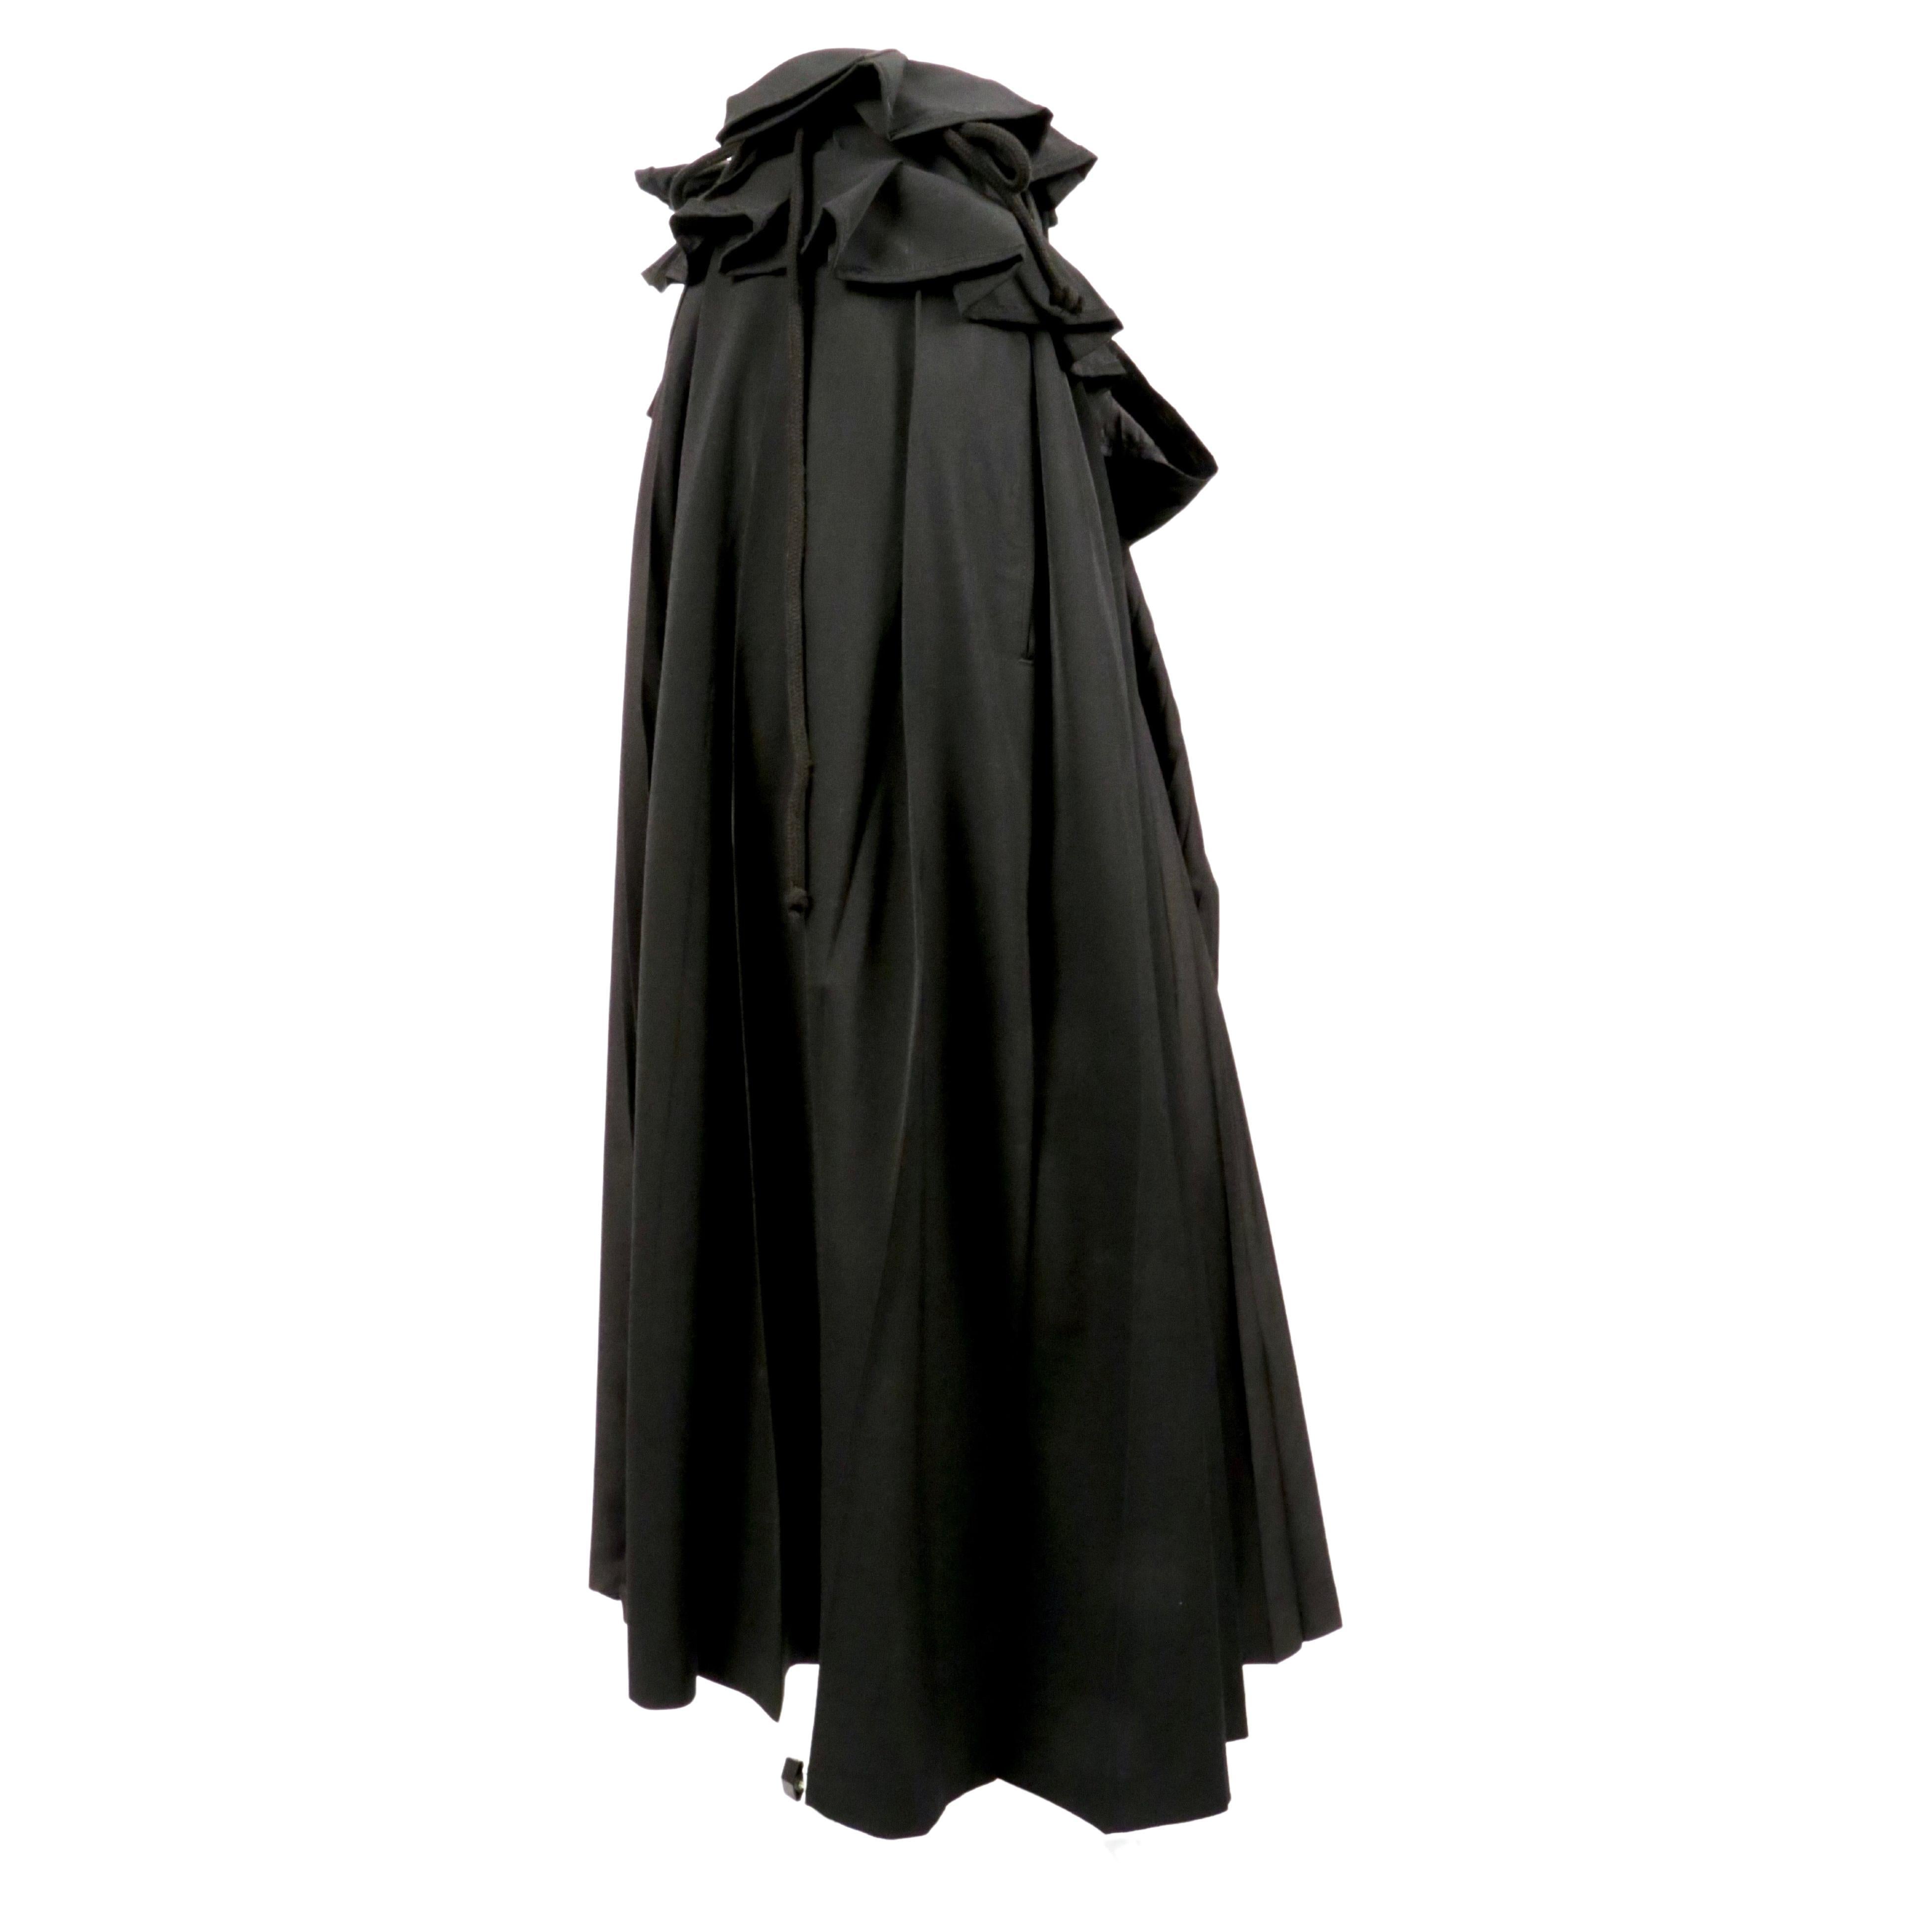 Jupe portefeuille plissée en laine et soie noir de jais avec lien en corde, conçue par Yohji Yamamoto et datant du début des années 2000. La jupe peut être portée de plusieurs façons car le lien passe par plusieurs boucles sur la partie plissée en